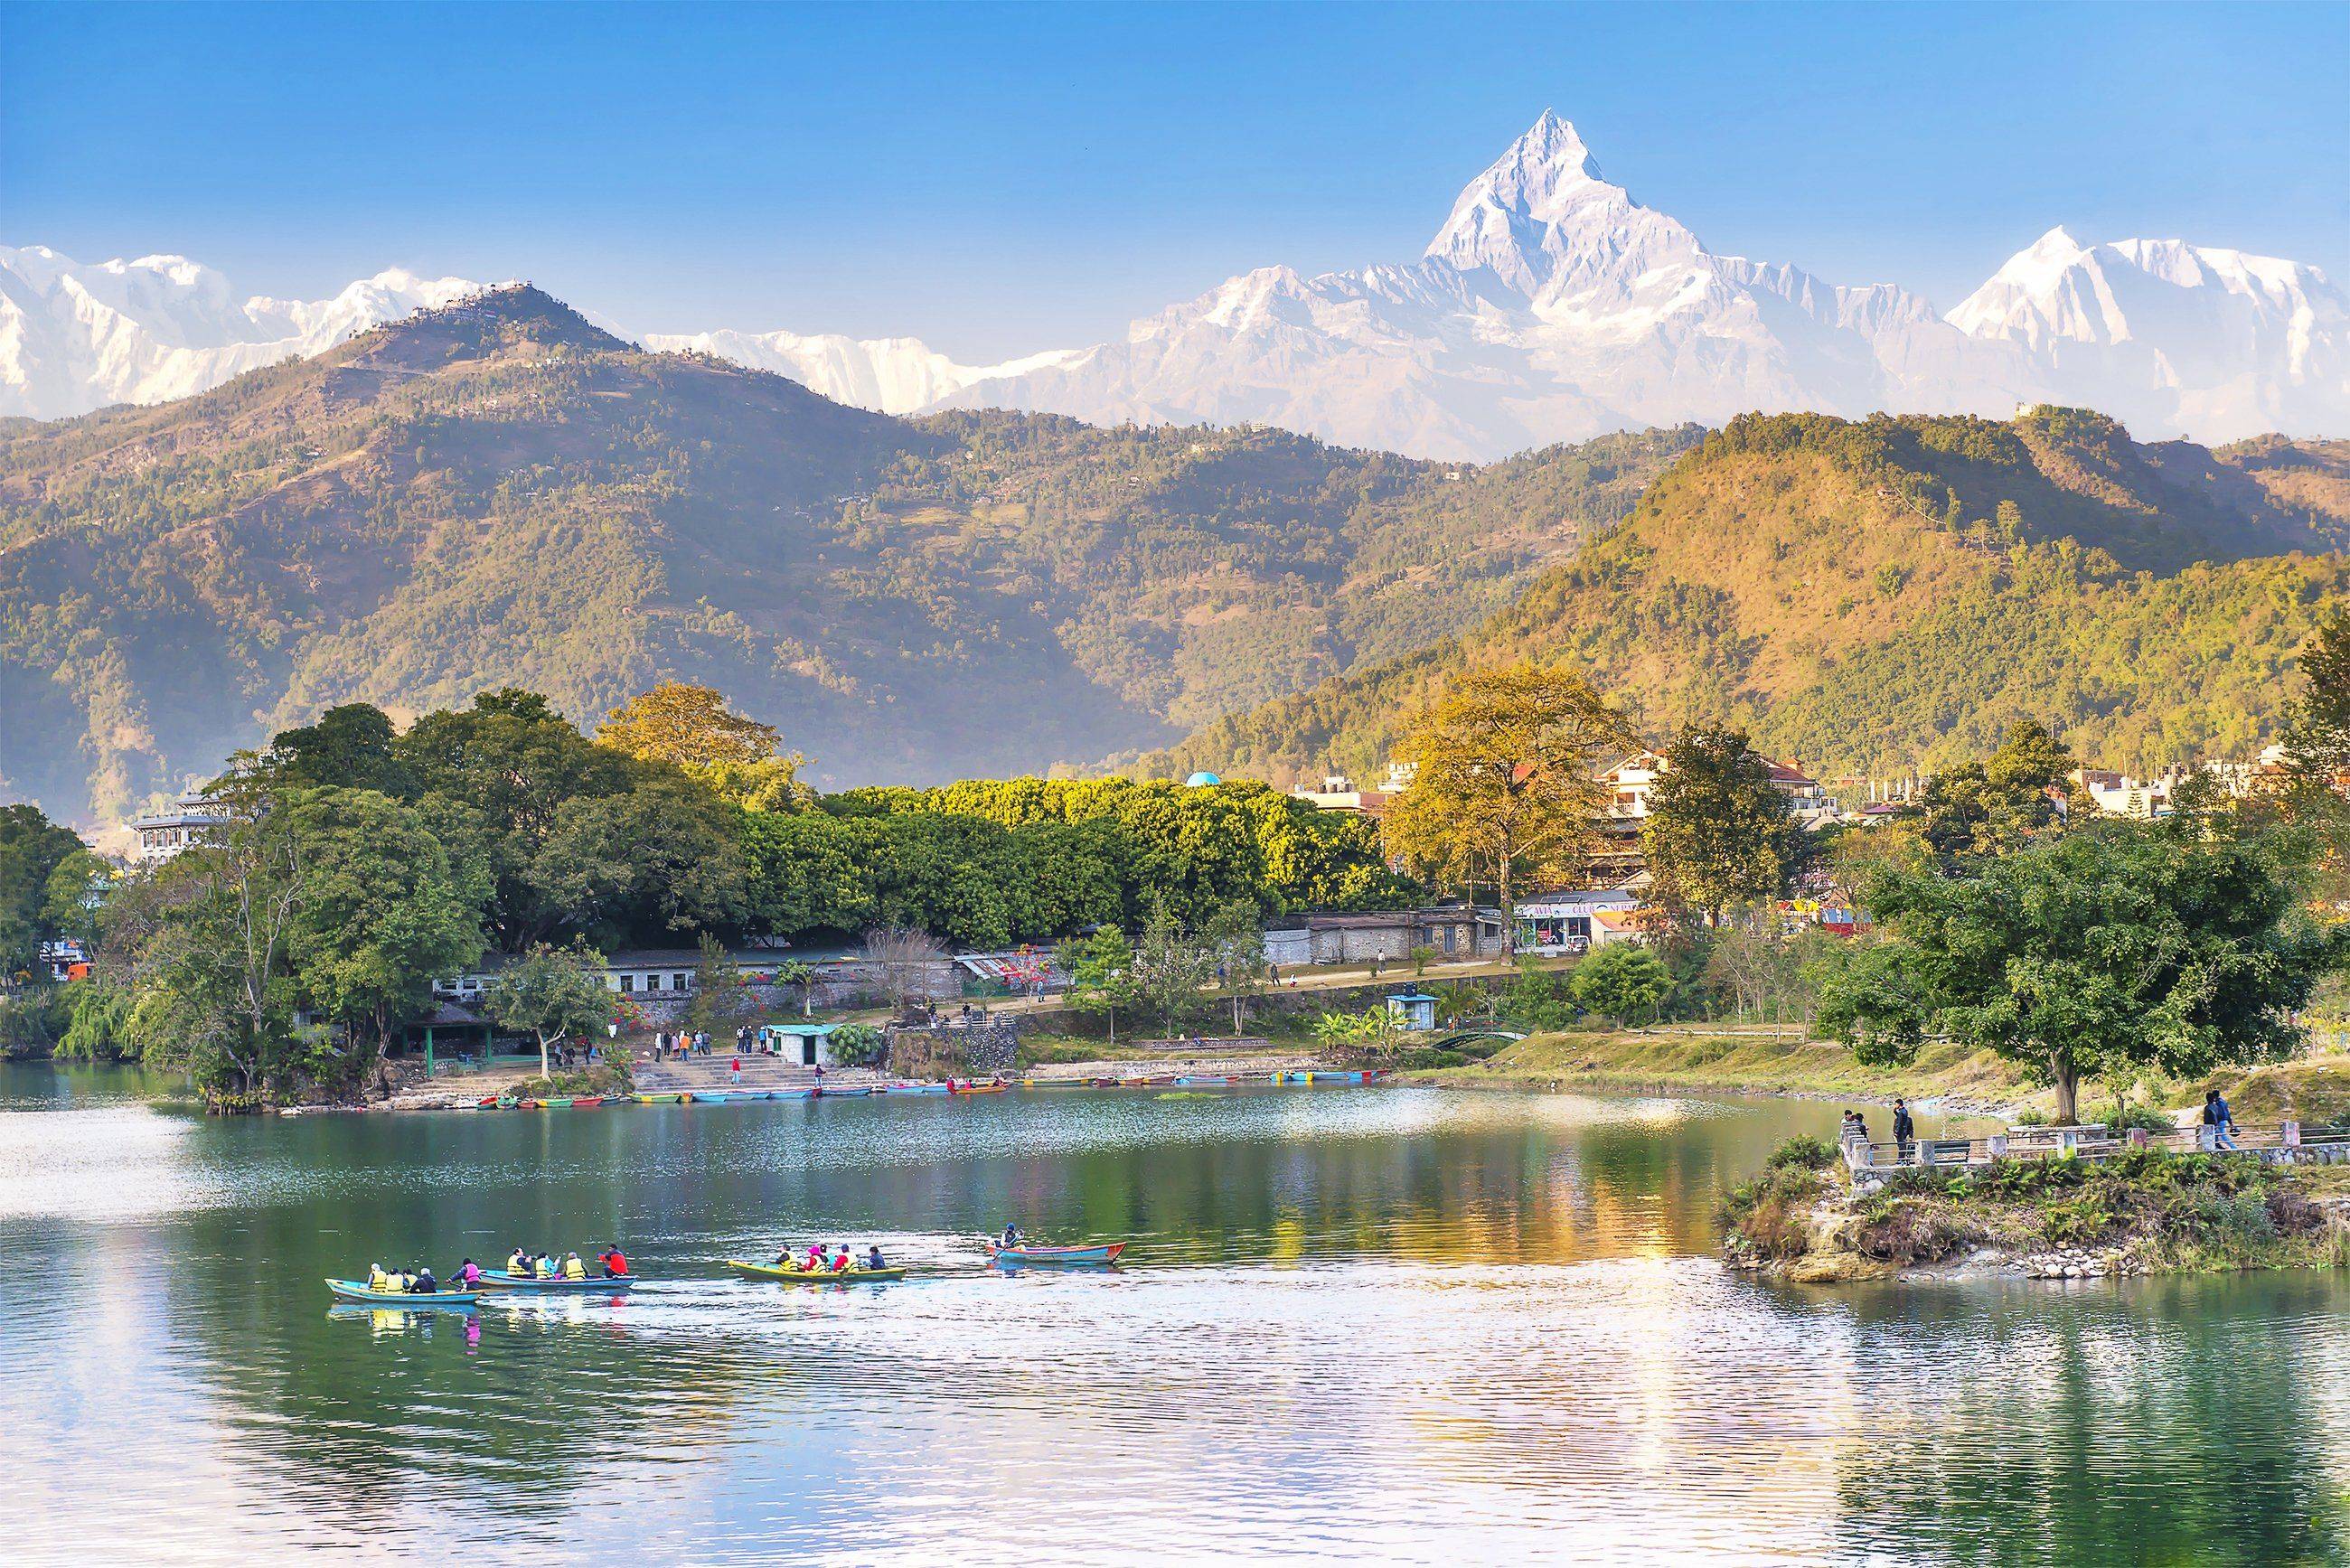 Kathmandu – Pokhara